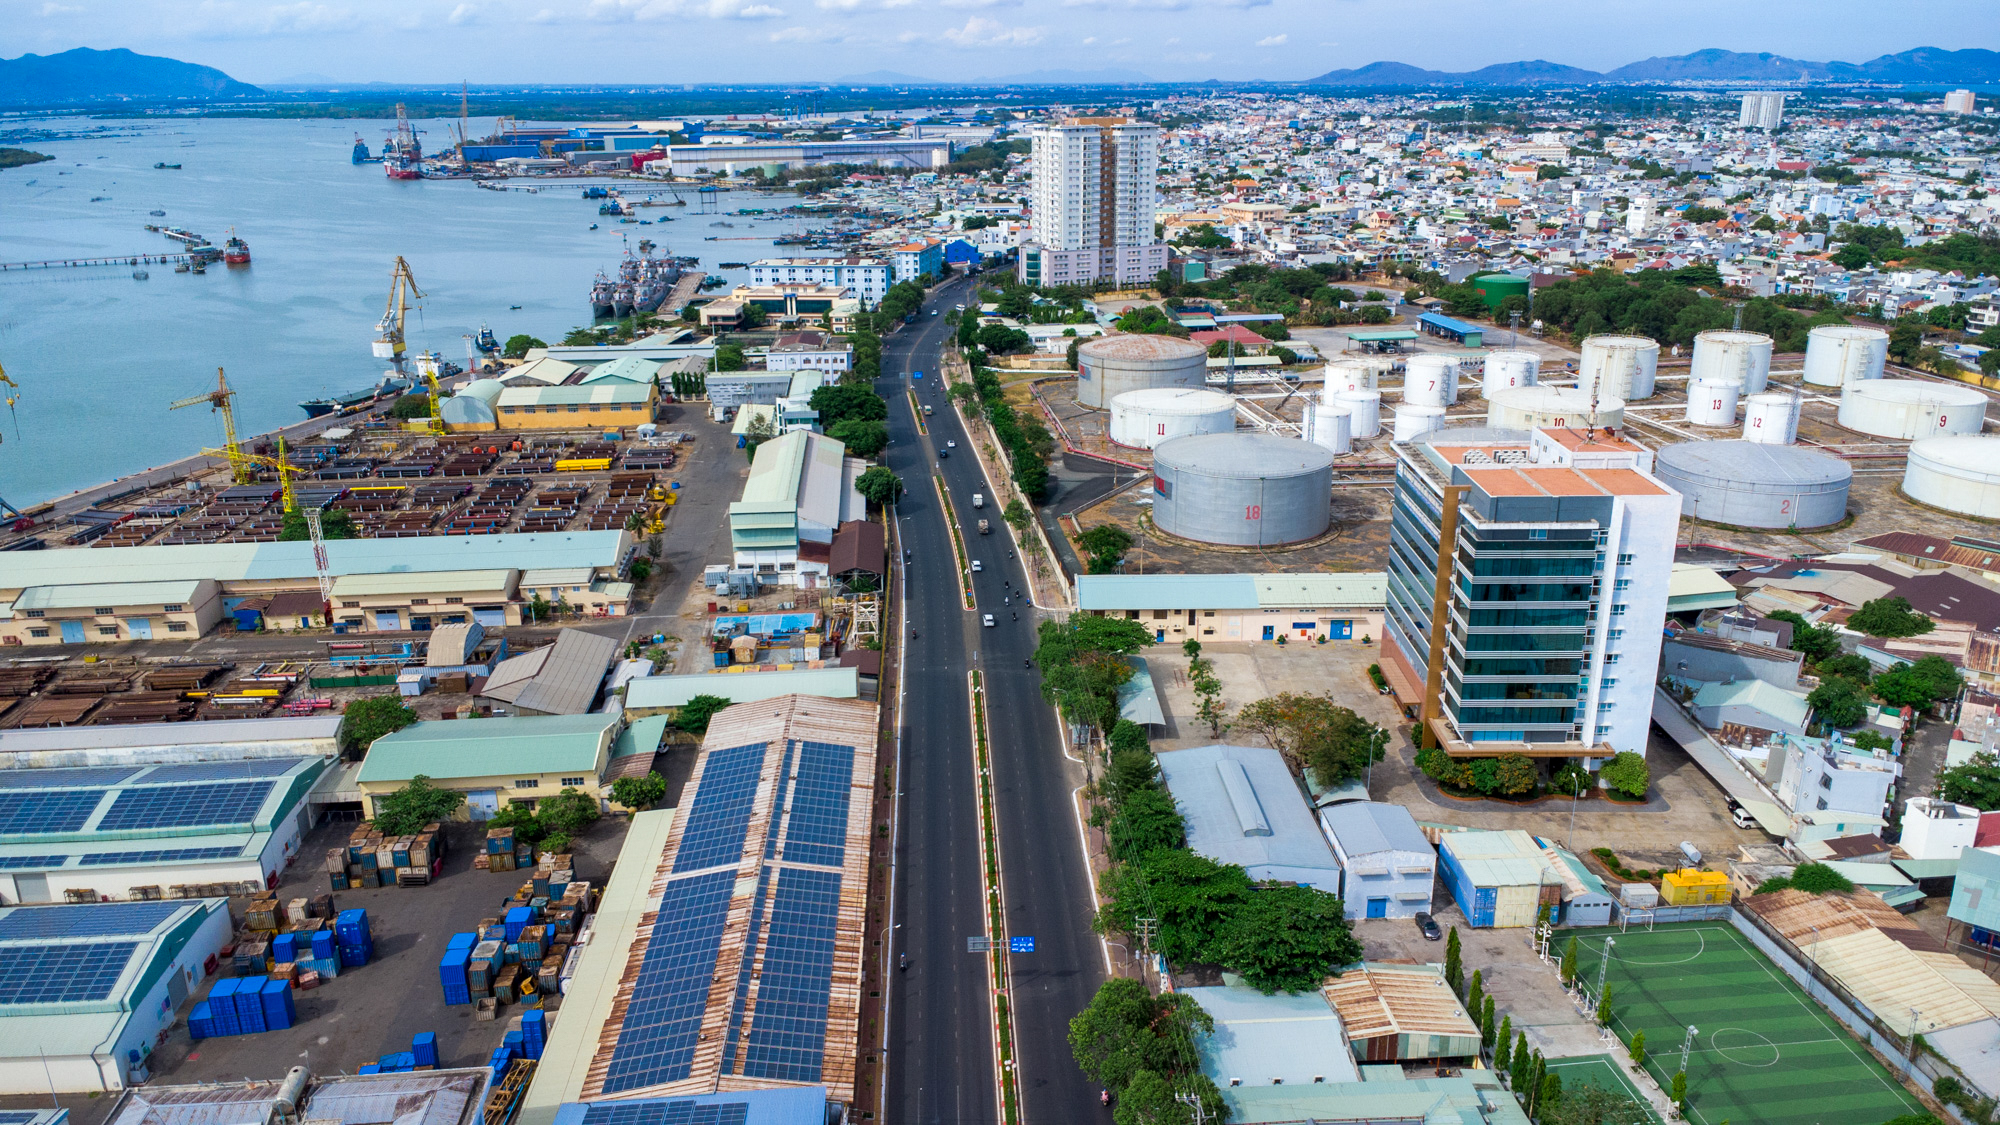 Đô thị loại một duy nhất nằm trên bán đảo, vừa có bờ biển đẹp top 5 Việt Nam, vừa thuộc tỉnh sở hữu hơn 93% trữ lượng dầu khí cả nước- Ảnh 6.